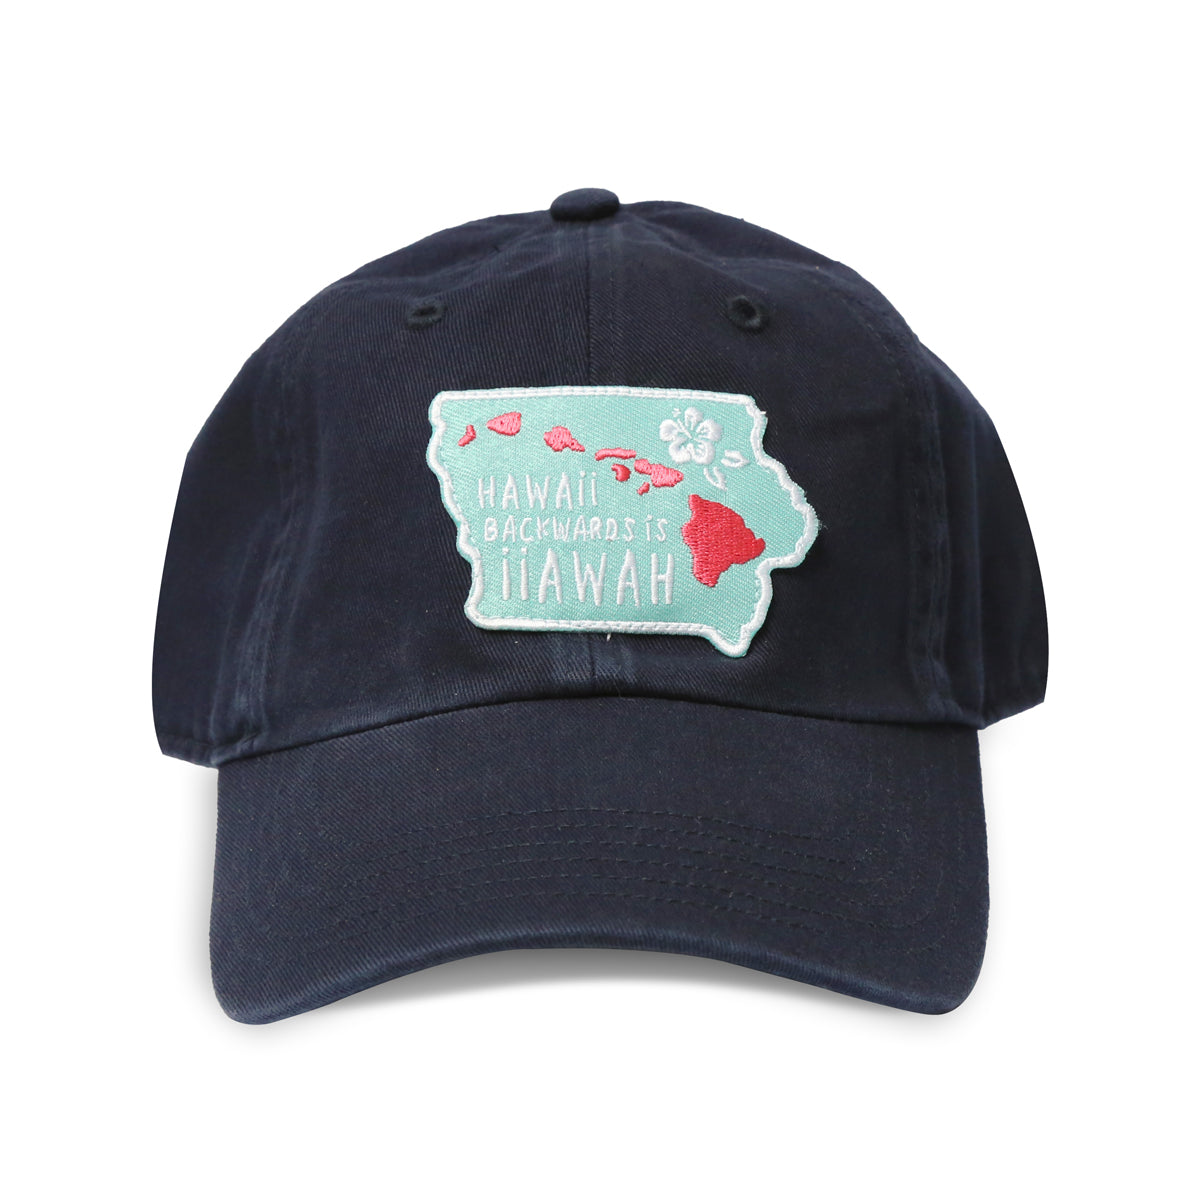 Hawaii Backwards is Iiawah Navy Hat - Bozz Prints